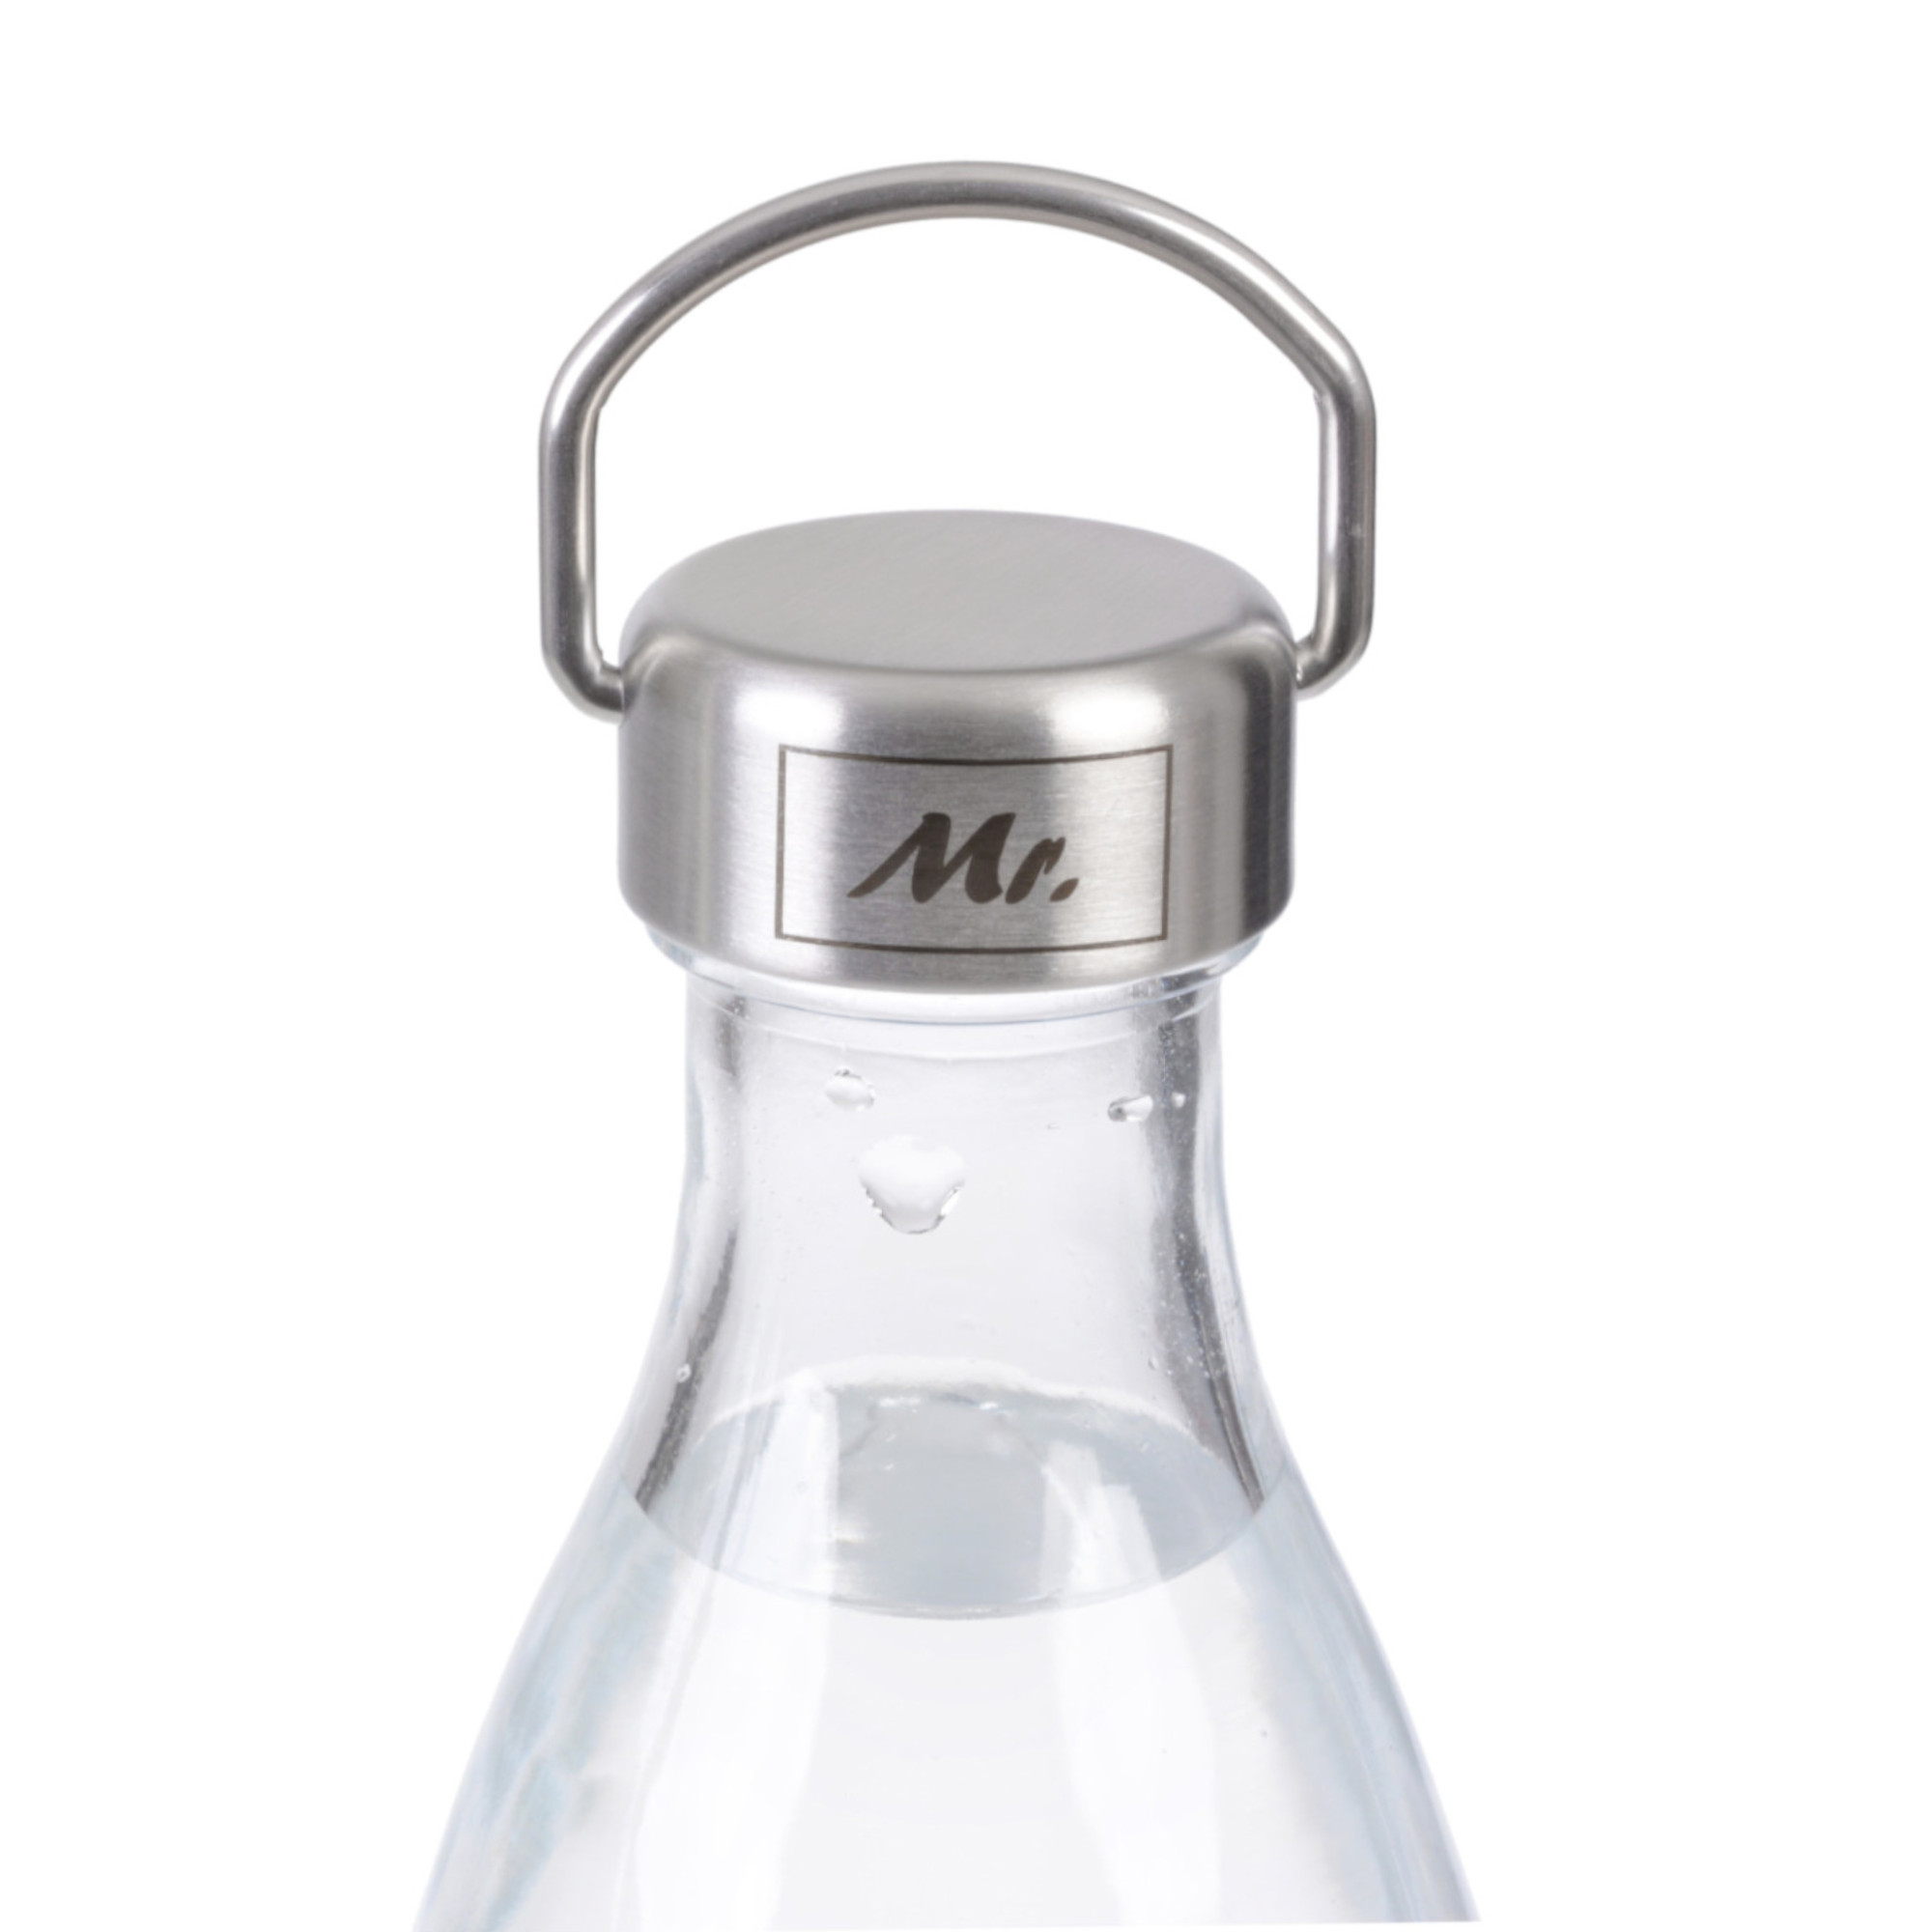 Schraubdeckel aus Edelstahl,  für Sodastreamflaschen, mit Laserung MR